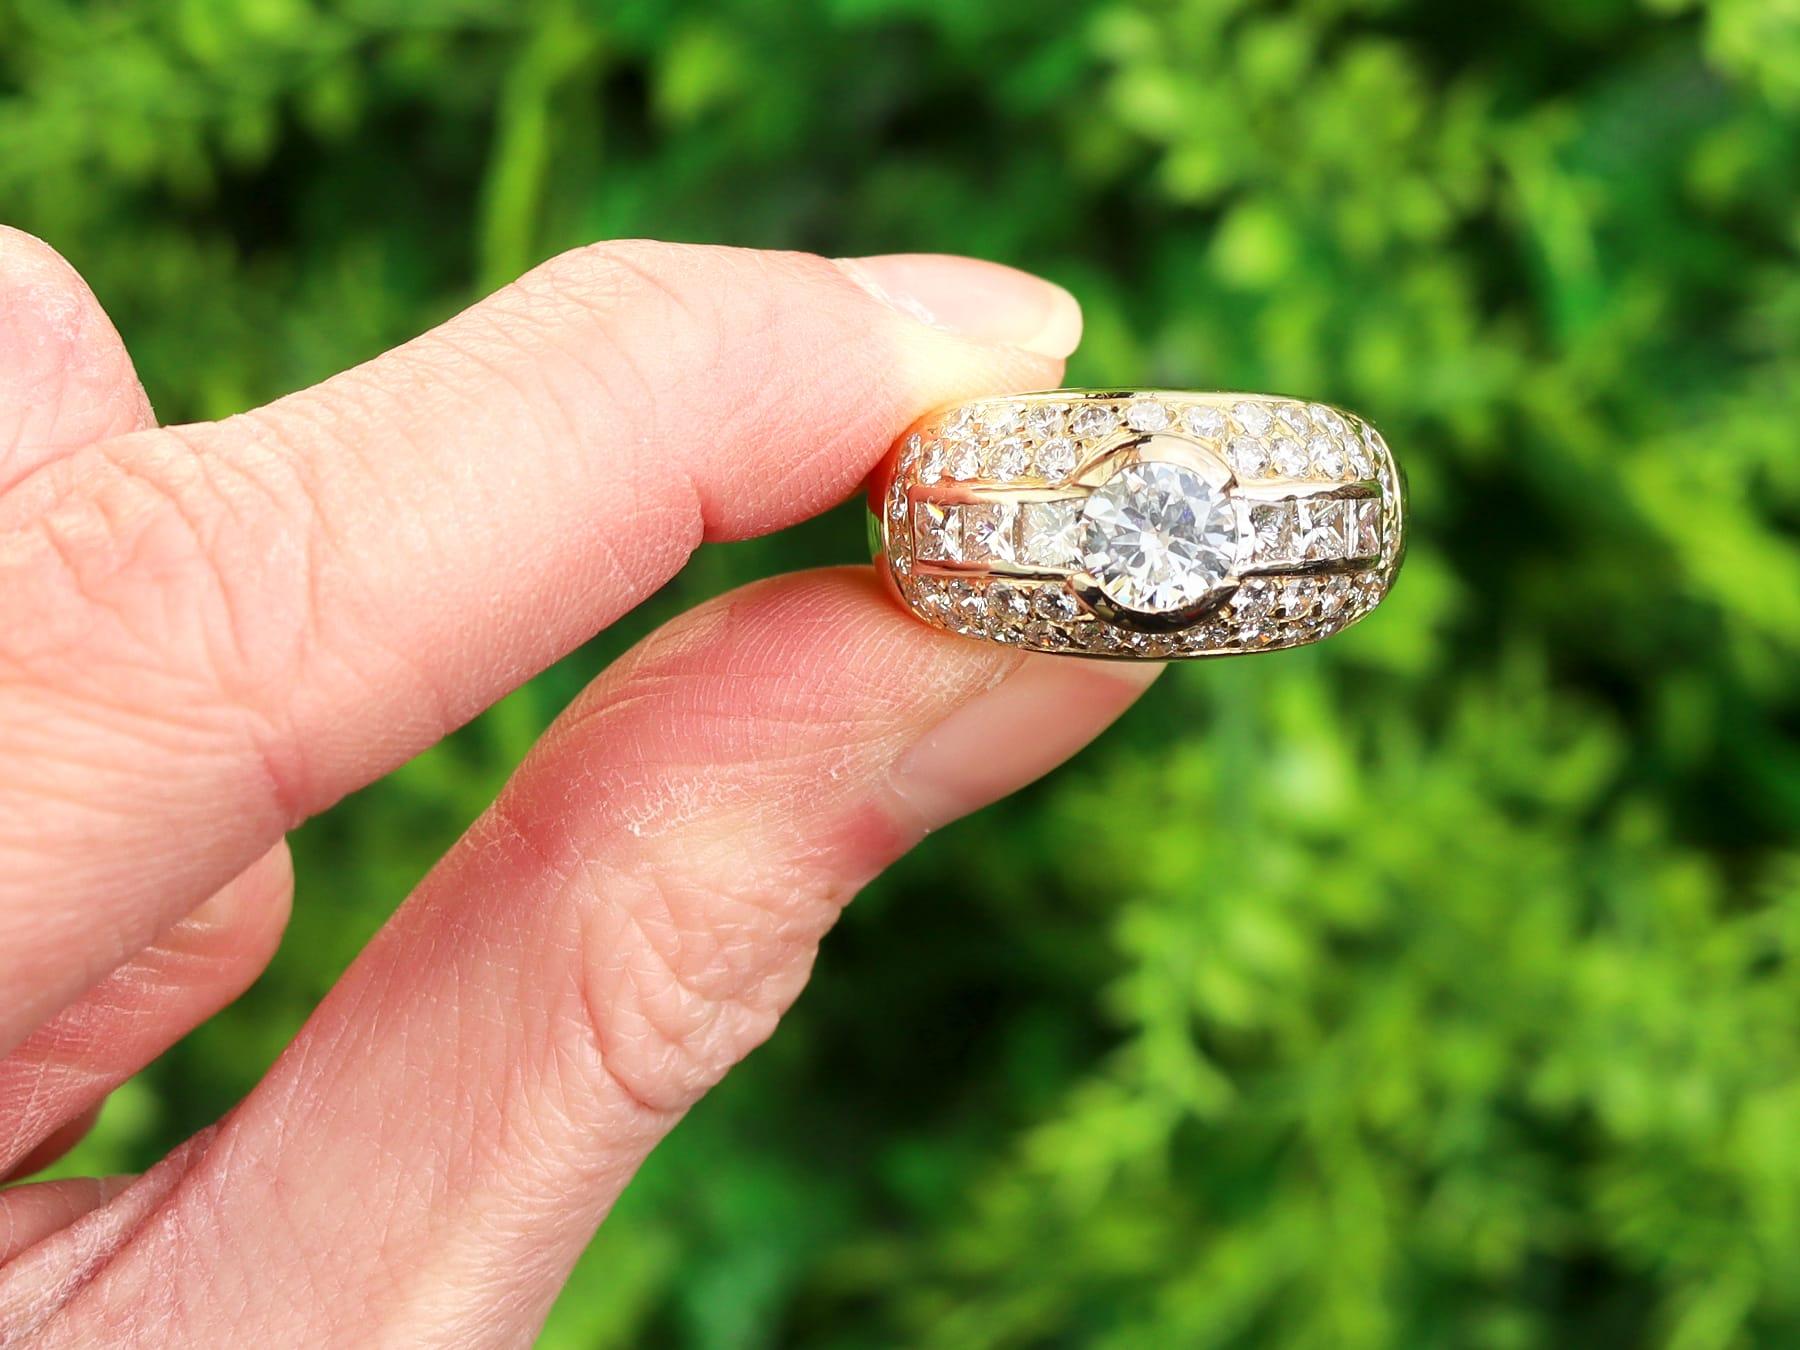 Ein atemberaubender, feiner und beeindruckender Vintage-Ring aus 3,98 Karat Diamanten und 18 Karat Gelbgold; Teil unserer Vintage-Schmuck- und Juwelierkollektionen.

Dieser atemberaubende, feine und beeindruckende Vintage-Diamantring ist aus 18